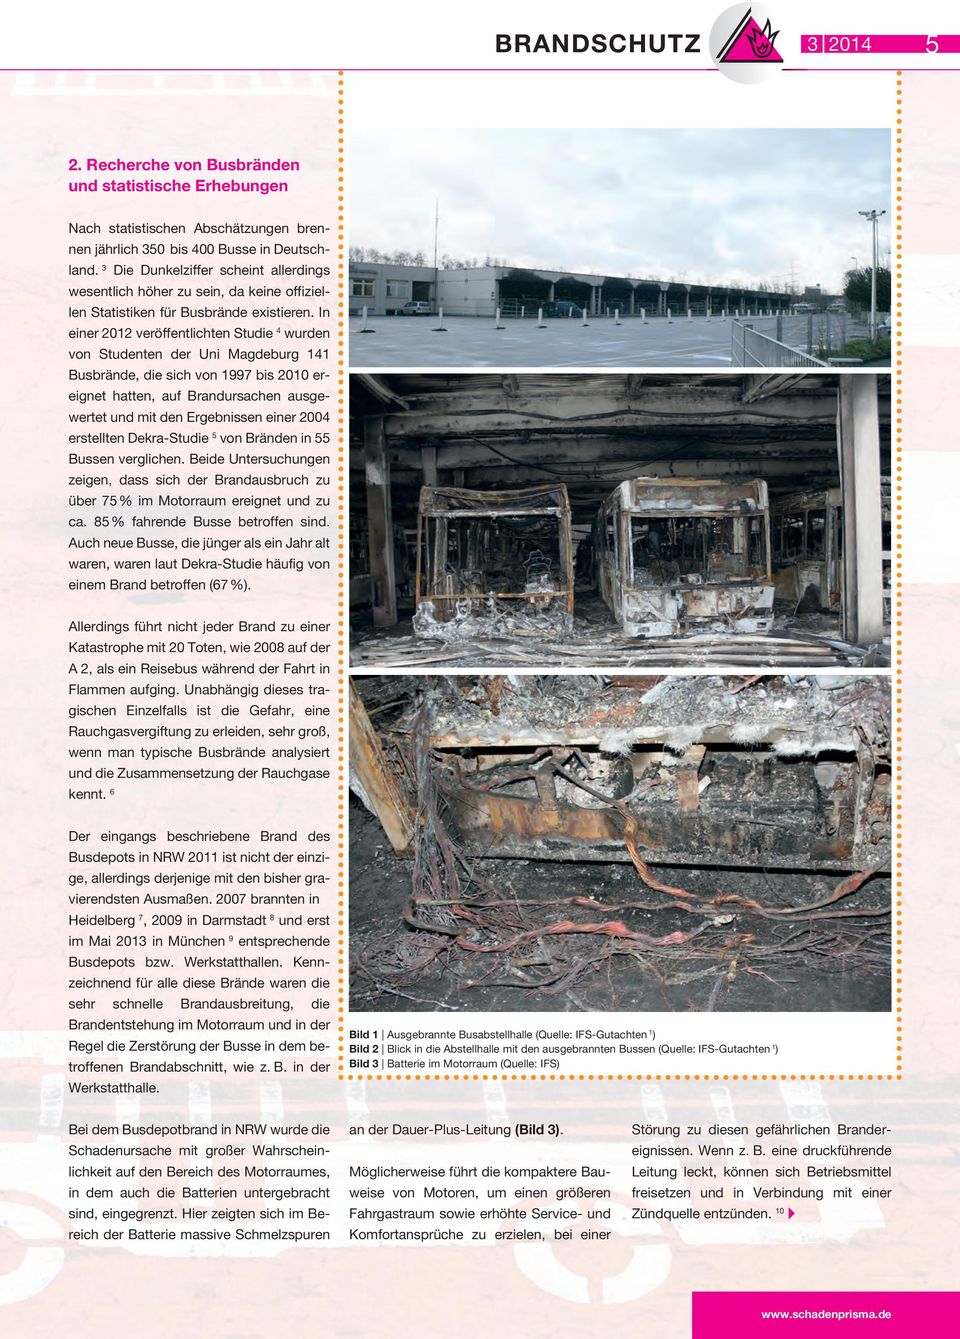 In einer 2012 veröffentlichten Studie 4 wurden von Studenten der Uni Magdeburg 141 Busbrände, die sich von 1997 bis 2010 ereignet hatten, auf Brandursachen ausgewertet und mit den Ergebnissen einer